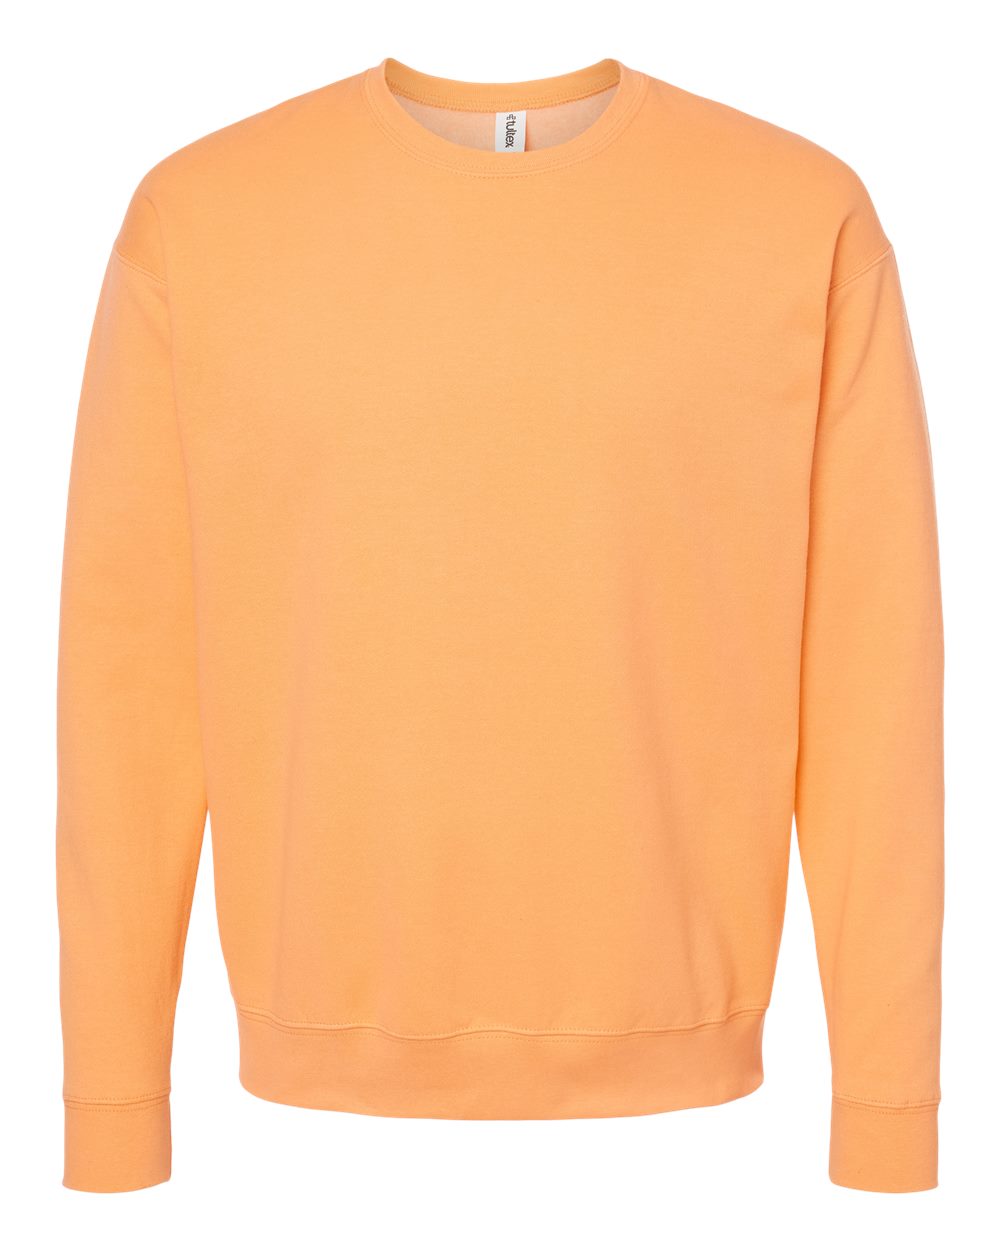 Tultex 340 Fleece Adult Sweatshirt - Cantaloupe